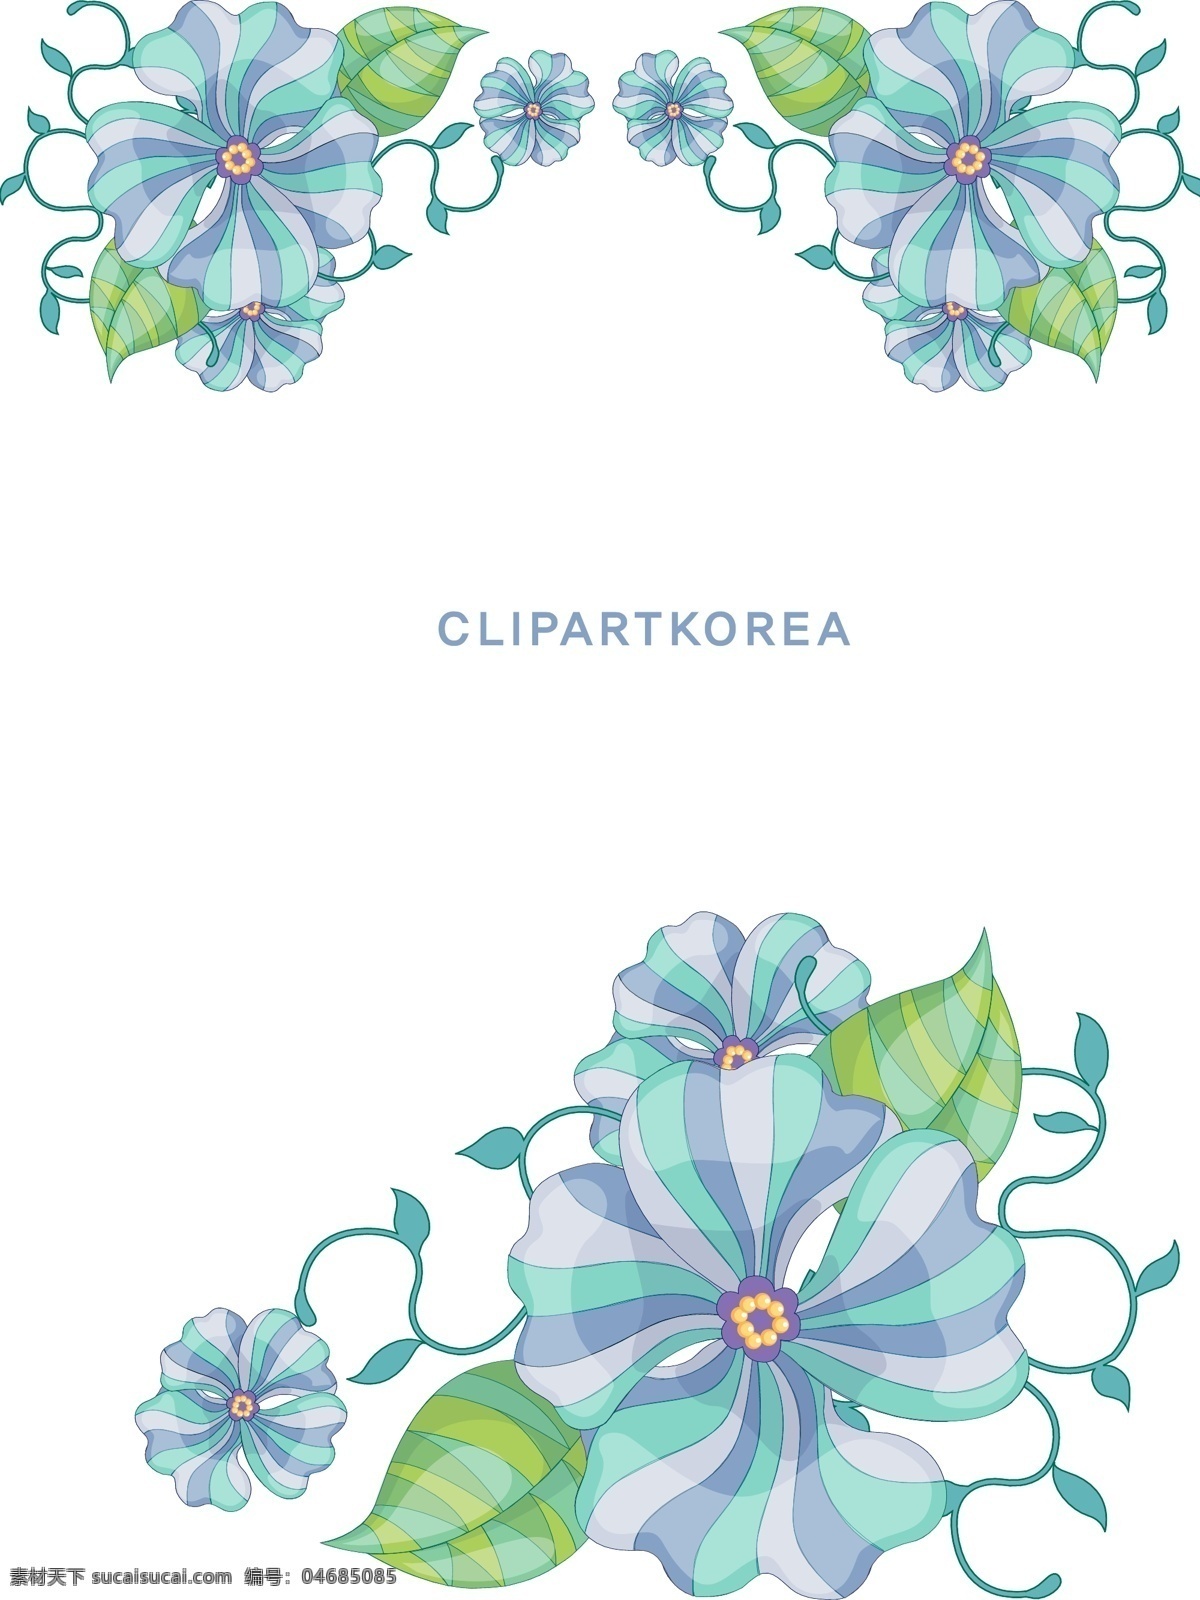 韩国 植物 花边 边框 矢量图 标签cdr 卡通cdr 卡通素材 女孩卡通图 男孩卡通图 其他矢量图